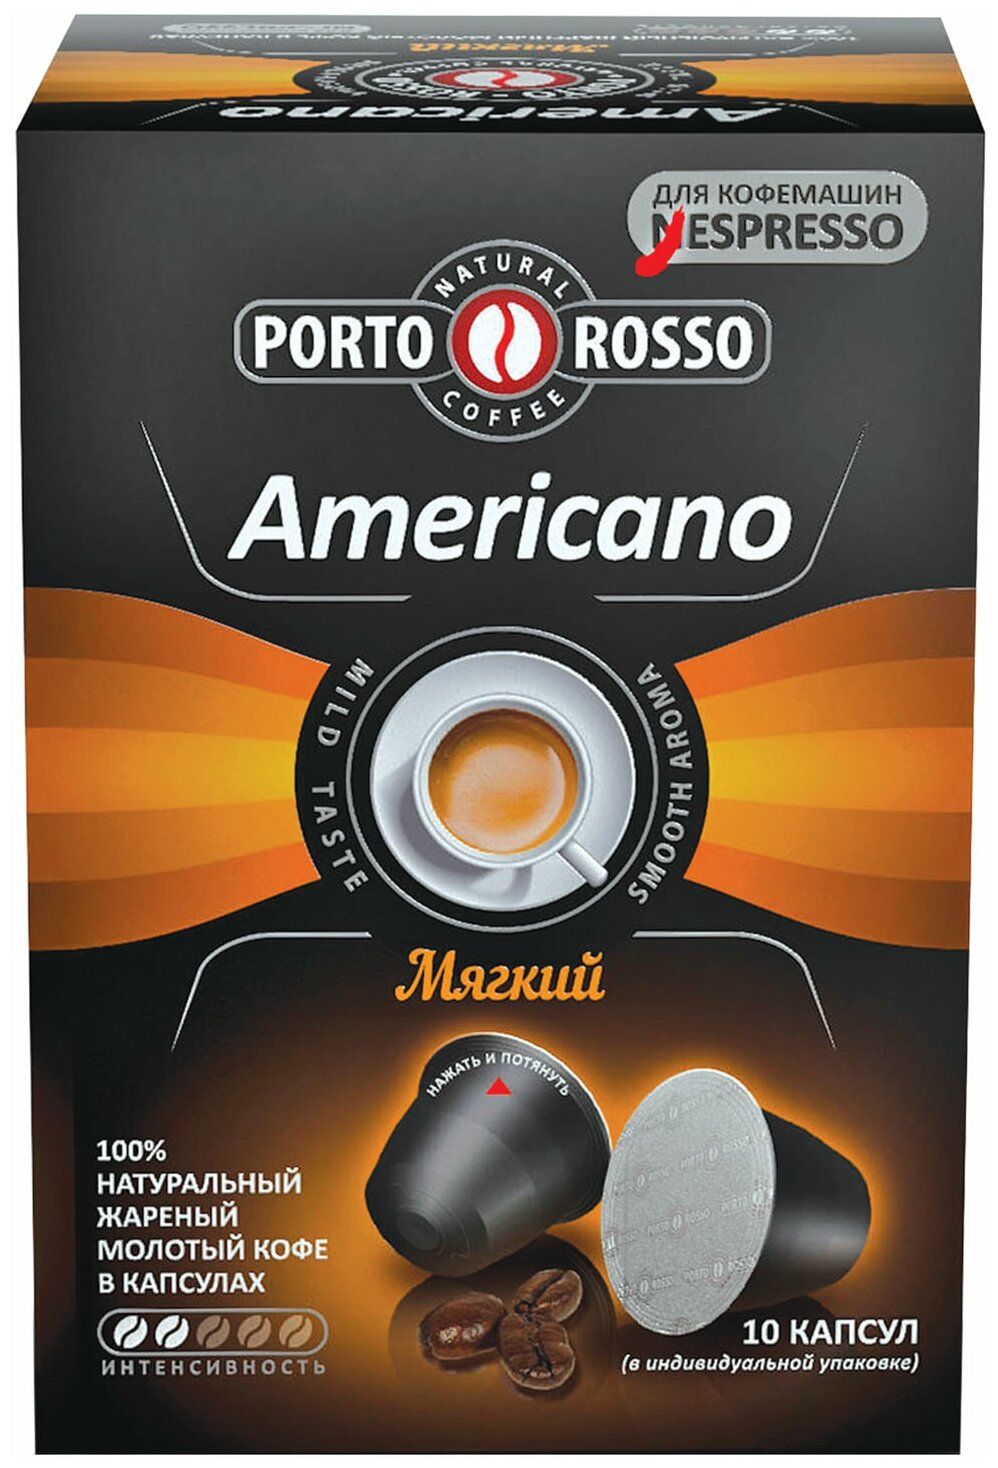 Квант продажи 2 ед. Кофе в капсулах PORTO ROSSO «Americano» для кофемашин Nespresso, 10 порций - фотография № 1